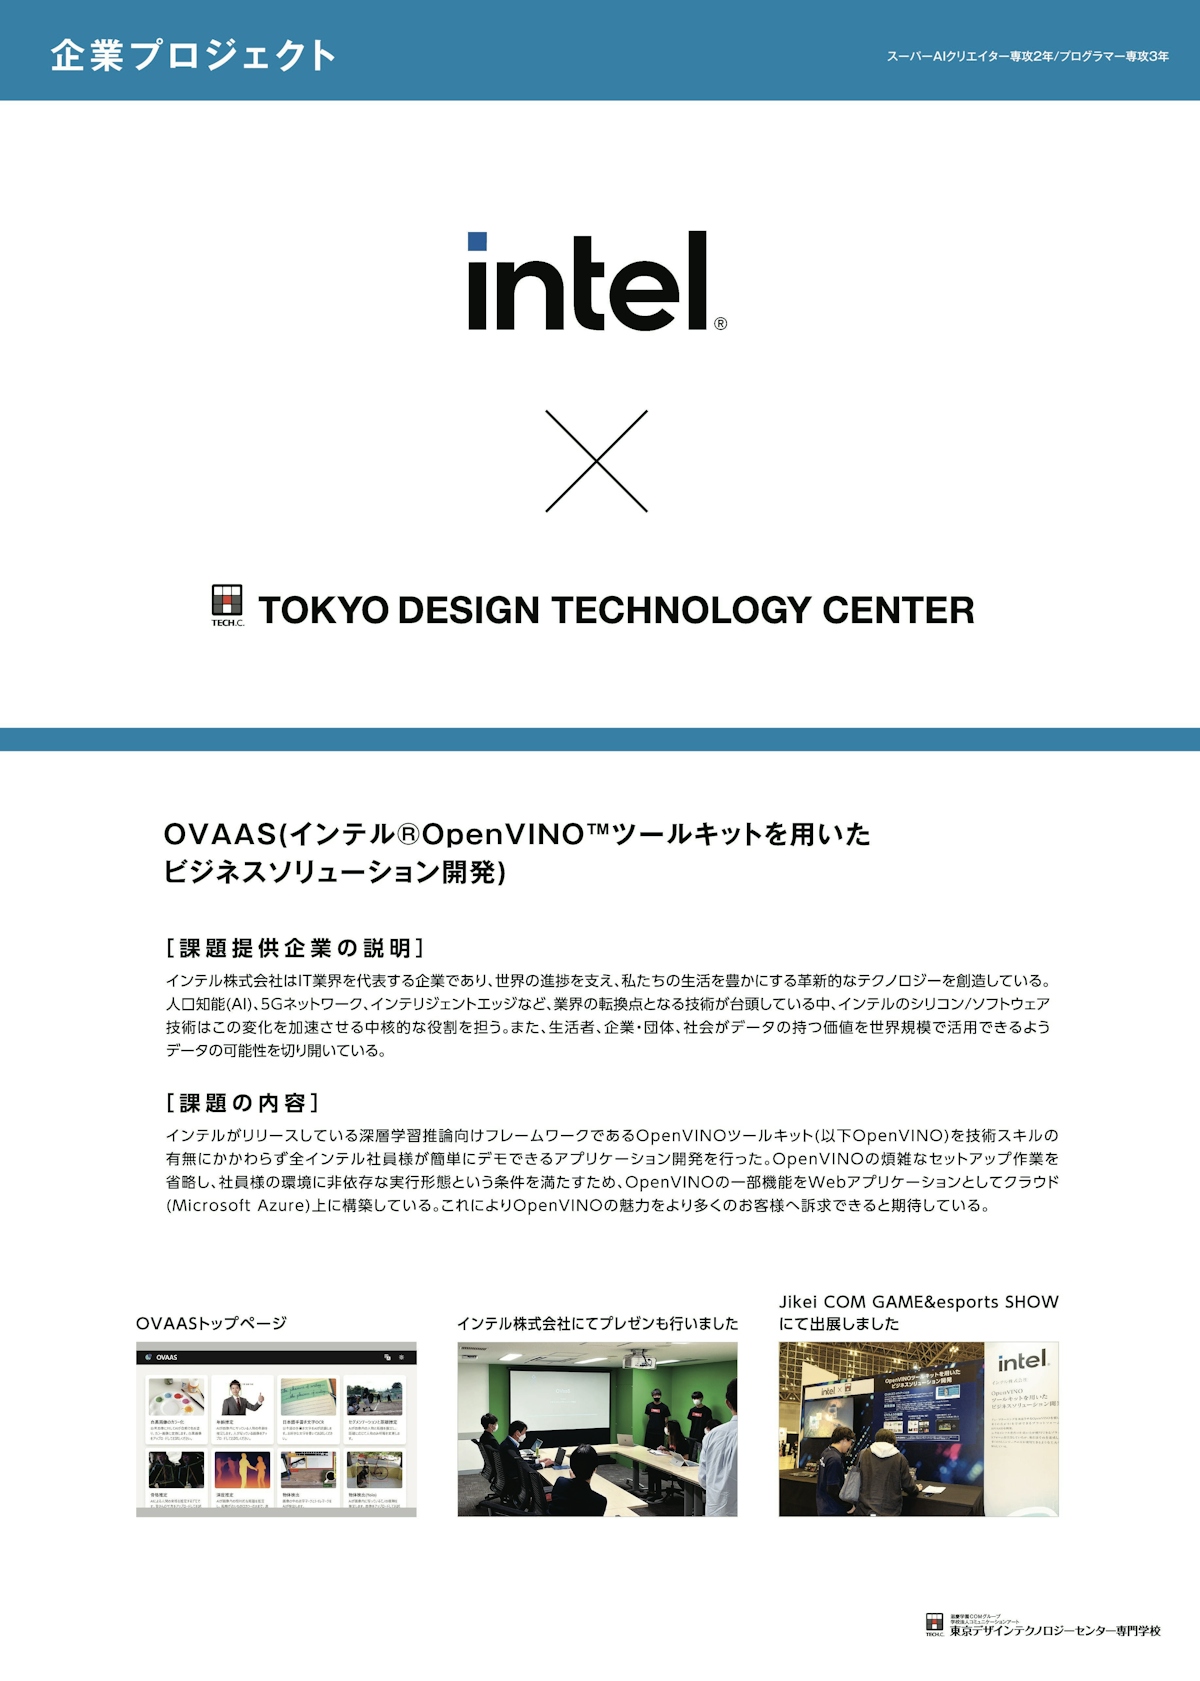 インテル株式会社×TECH.C.